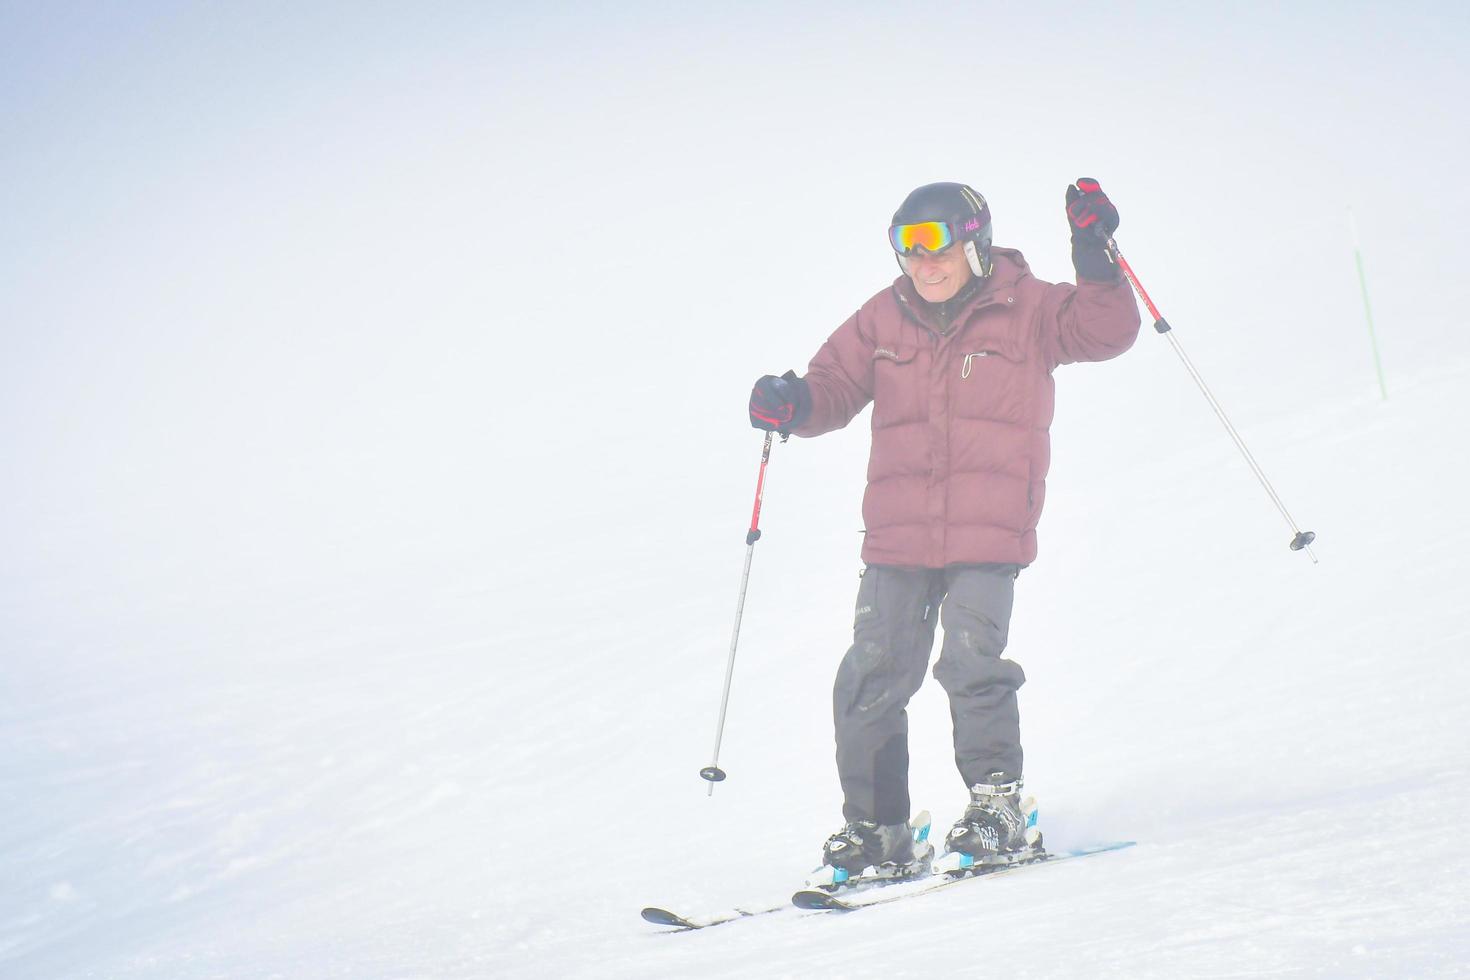 gudauri, geórgia, 2022 - homem caucasiano aventureiro idoso esqui em declive animado em condições de neve na estância de esqui de inverno de férias foto